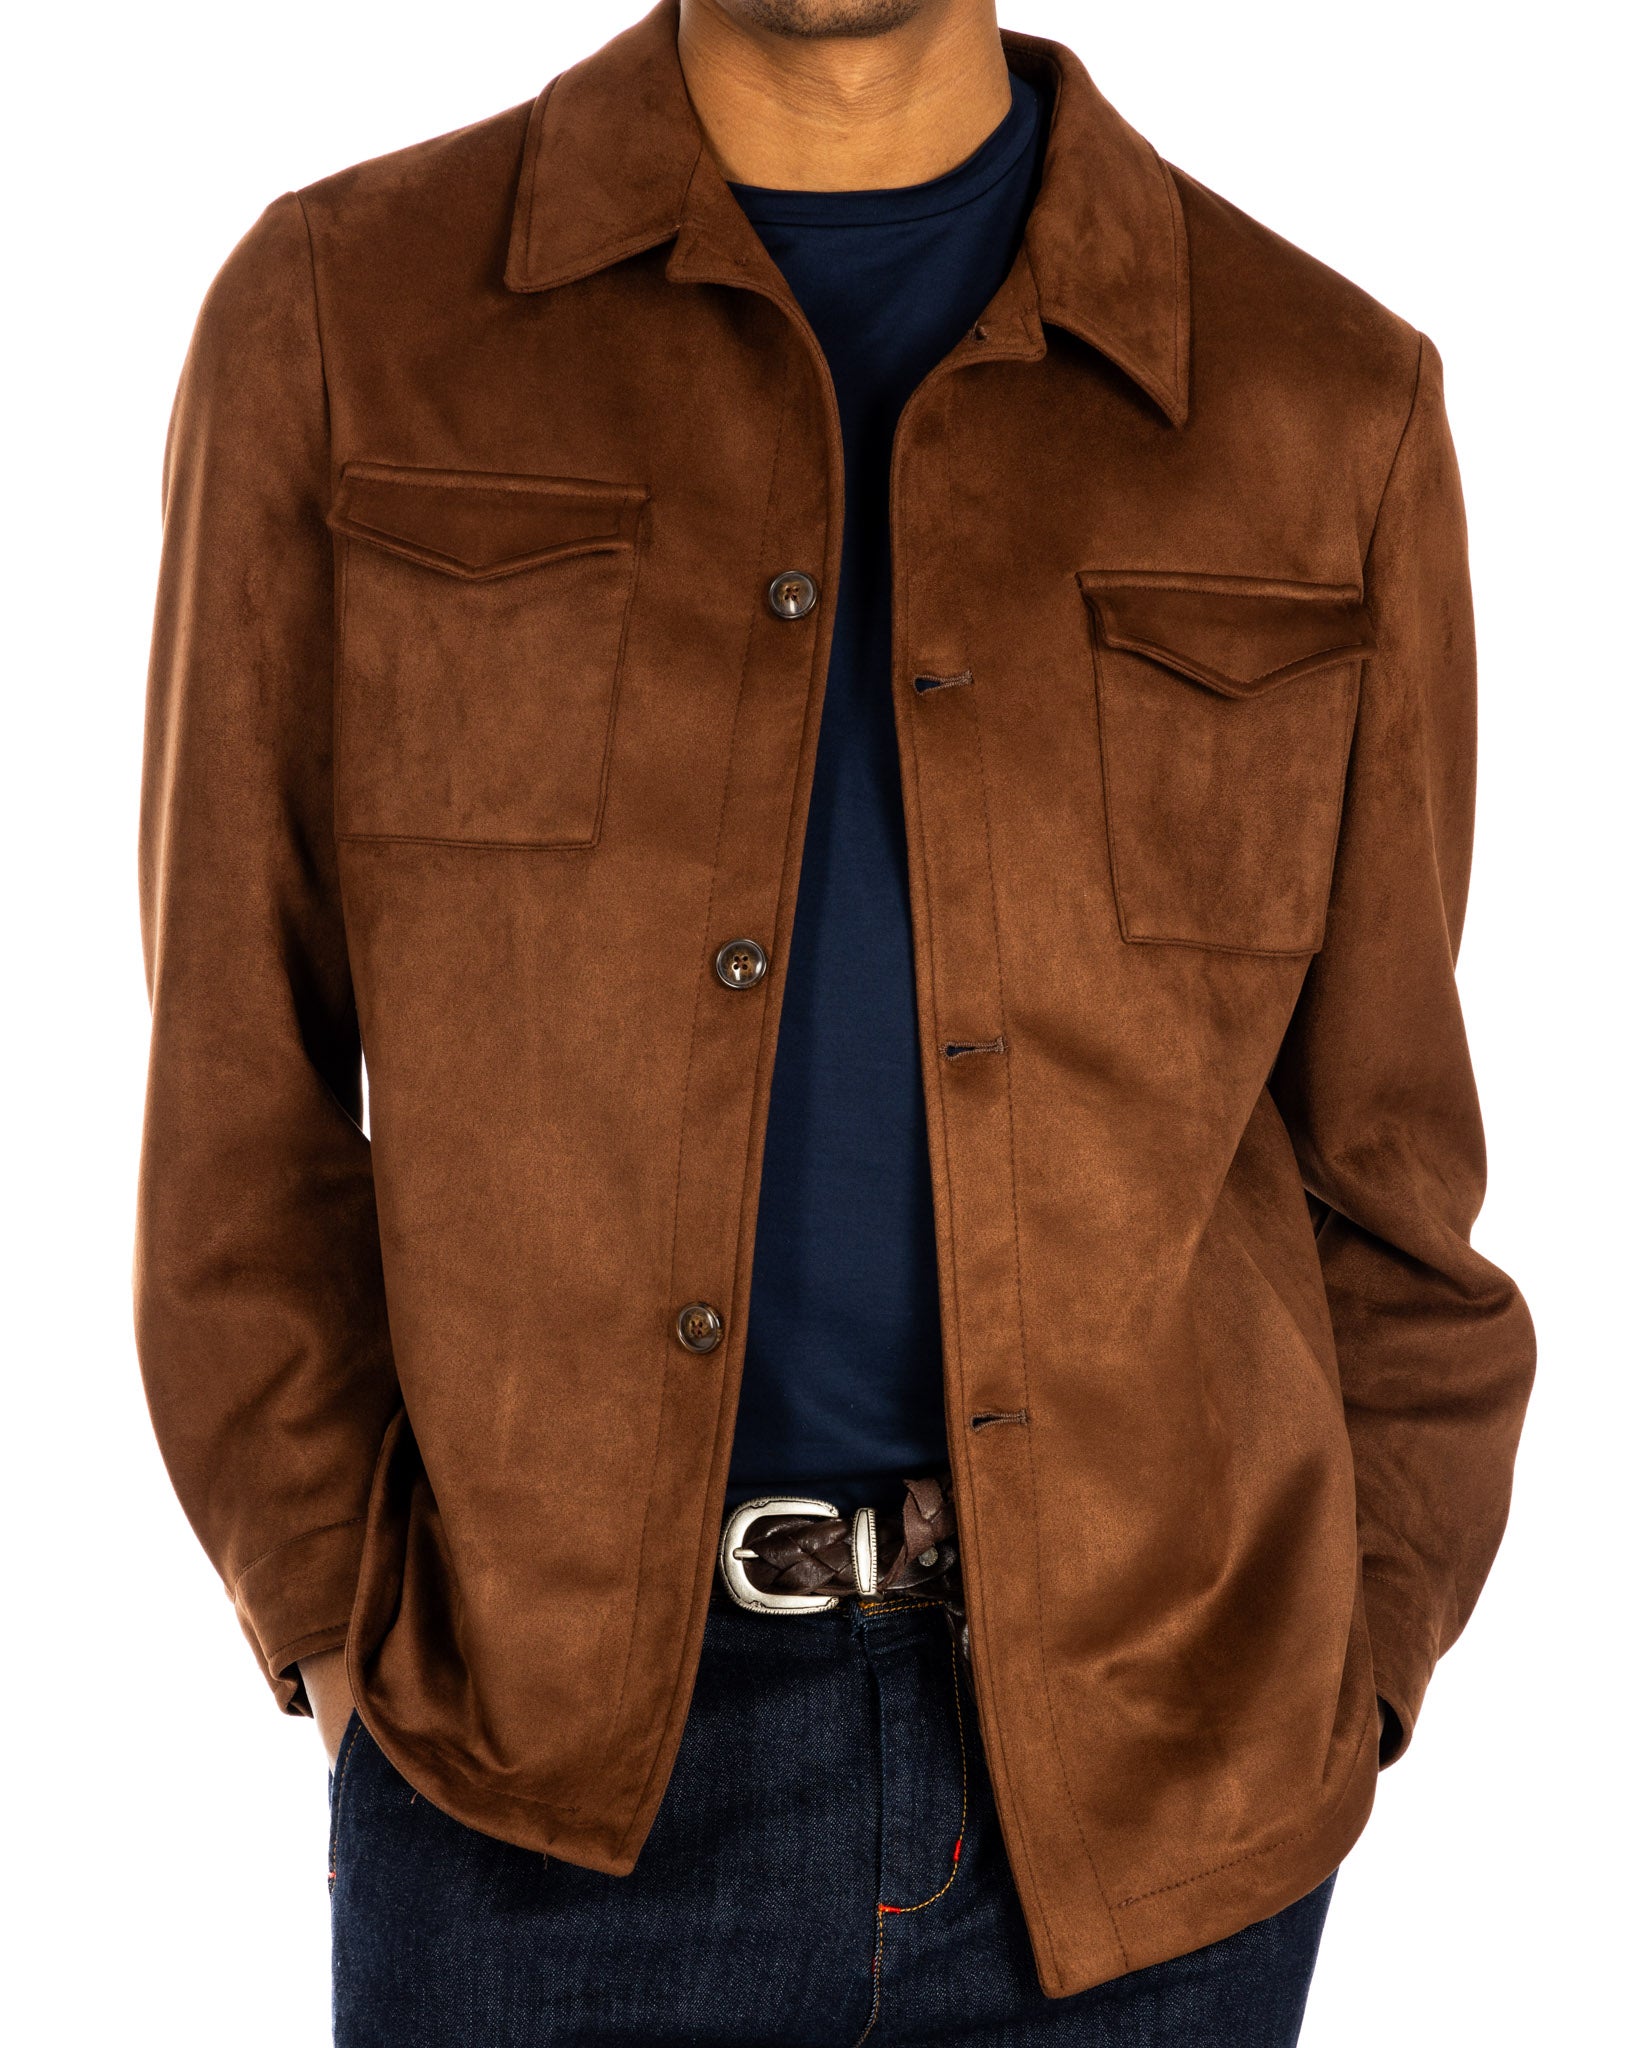 Meridion - dark brown suede jacket